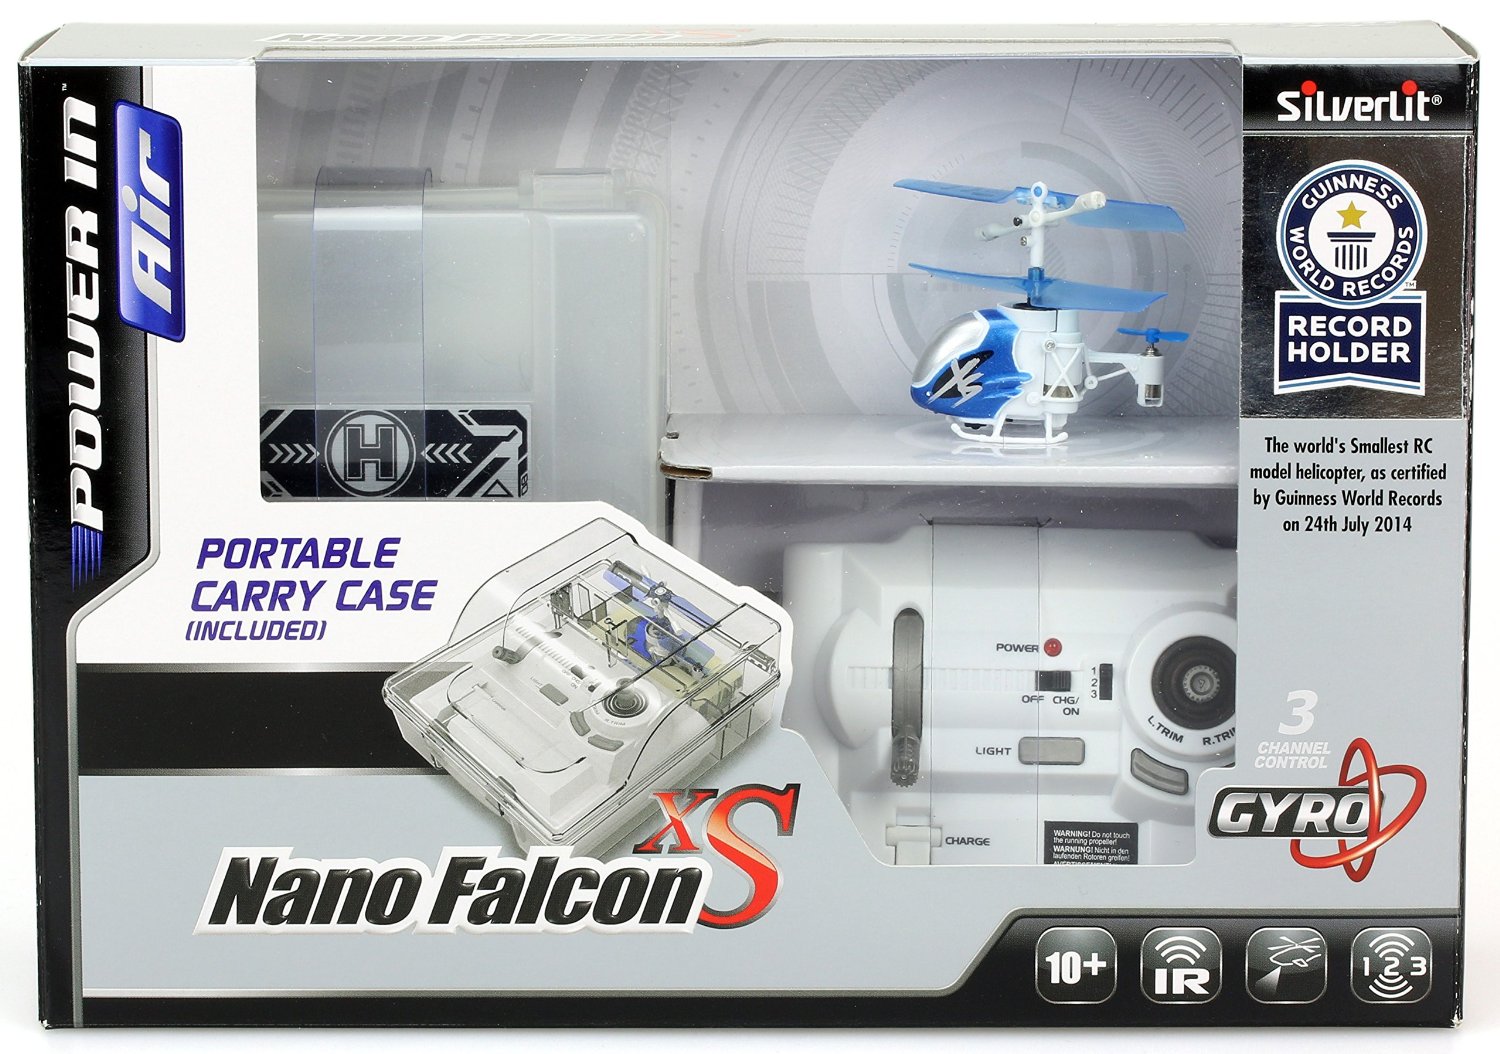 Вертолет Нано Фалкон Silverlit XS из книги рекордов Гиннесса  